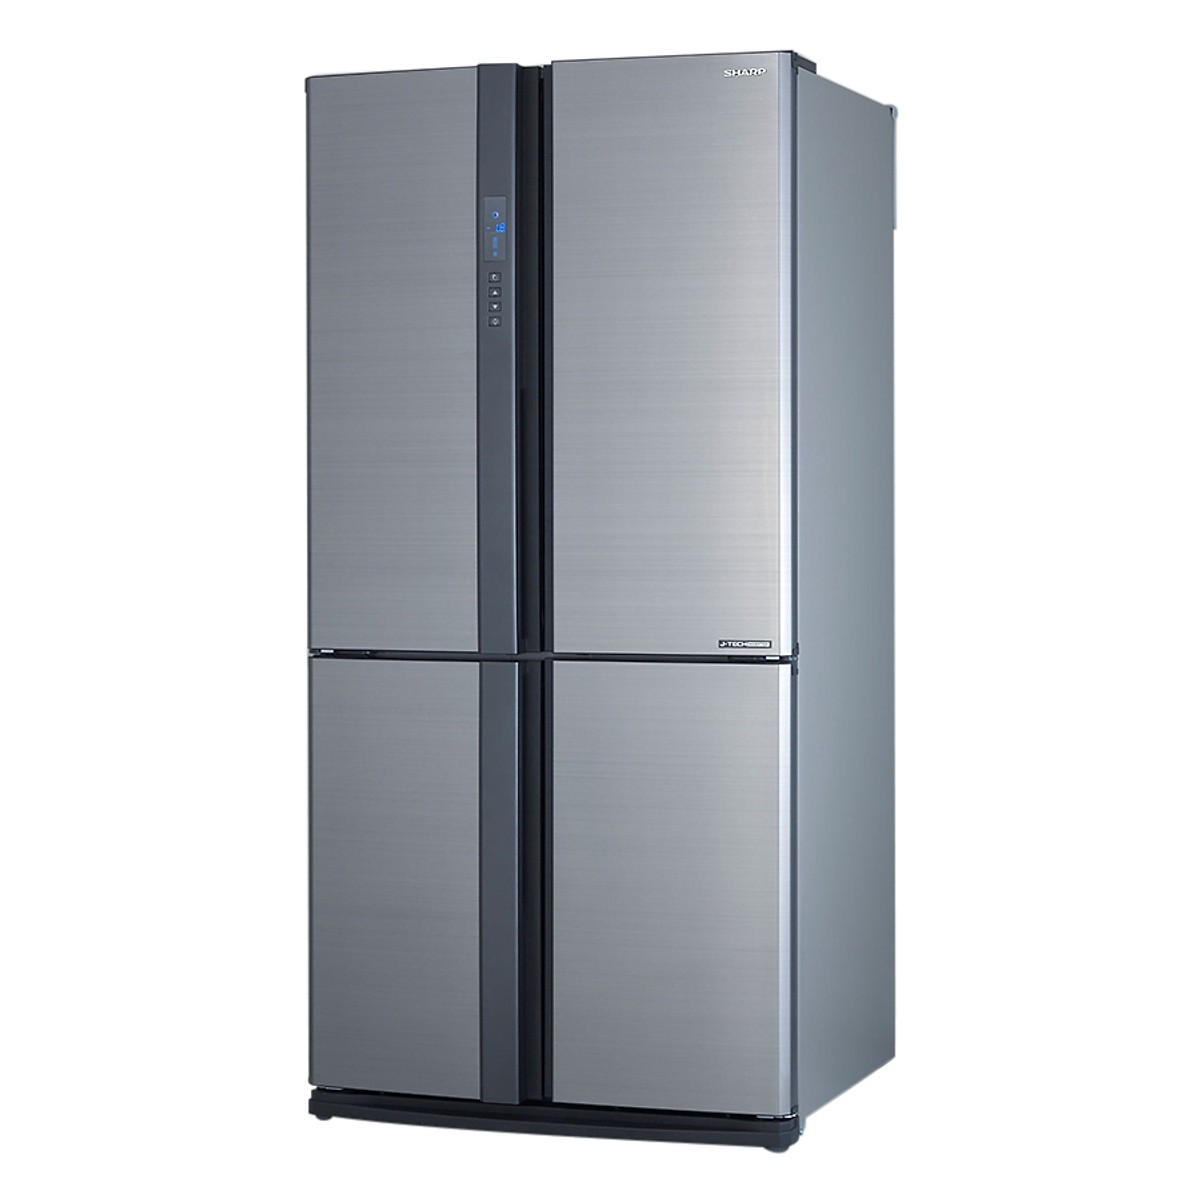 TRẢ GÓP 0% - Tủ lạnh Sharp SJ-FX631V-SL 626L 4 cửa công nghệ J-Tech Inverter khử mùi Nano Bạc -...